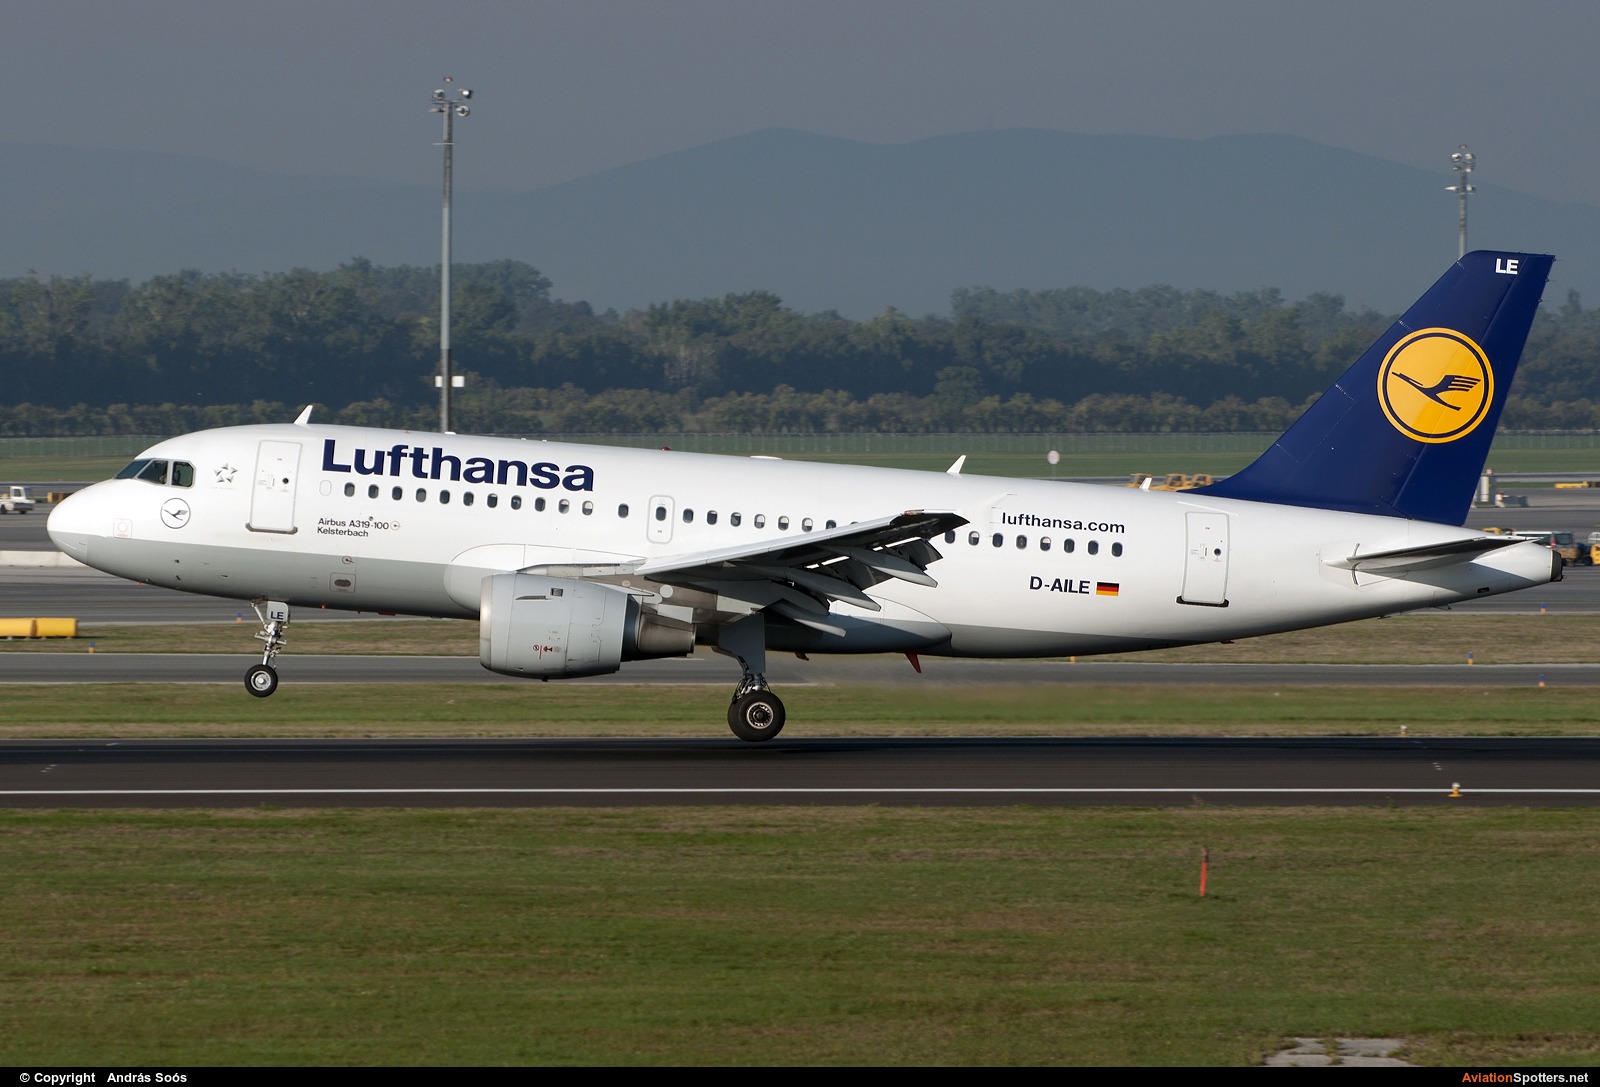 Lufthansa  -  A319  (D-AILE) By András Soós (sas1965)